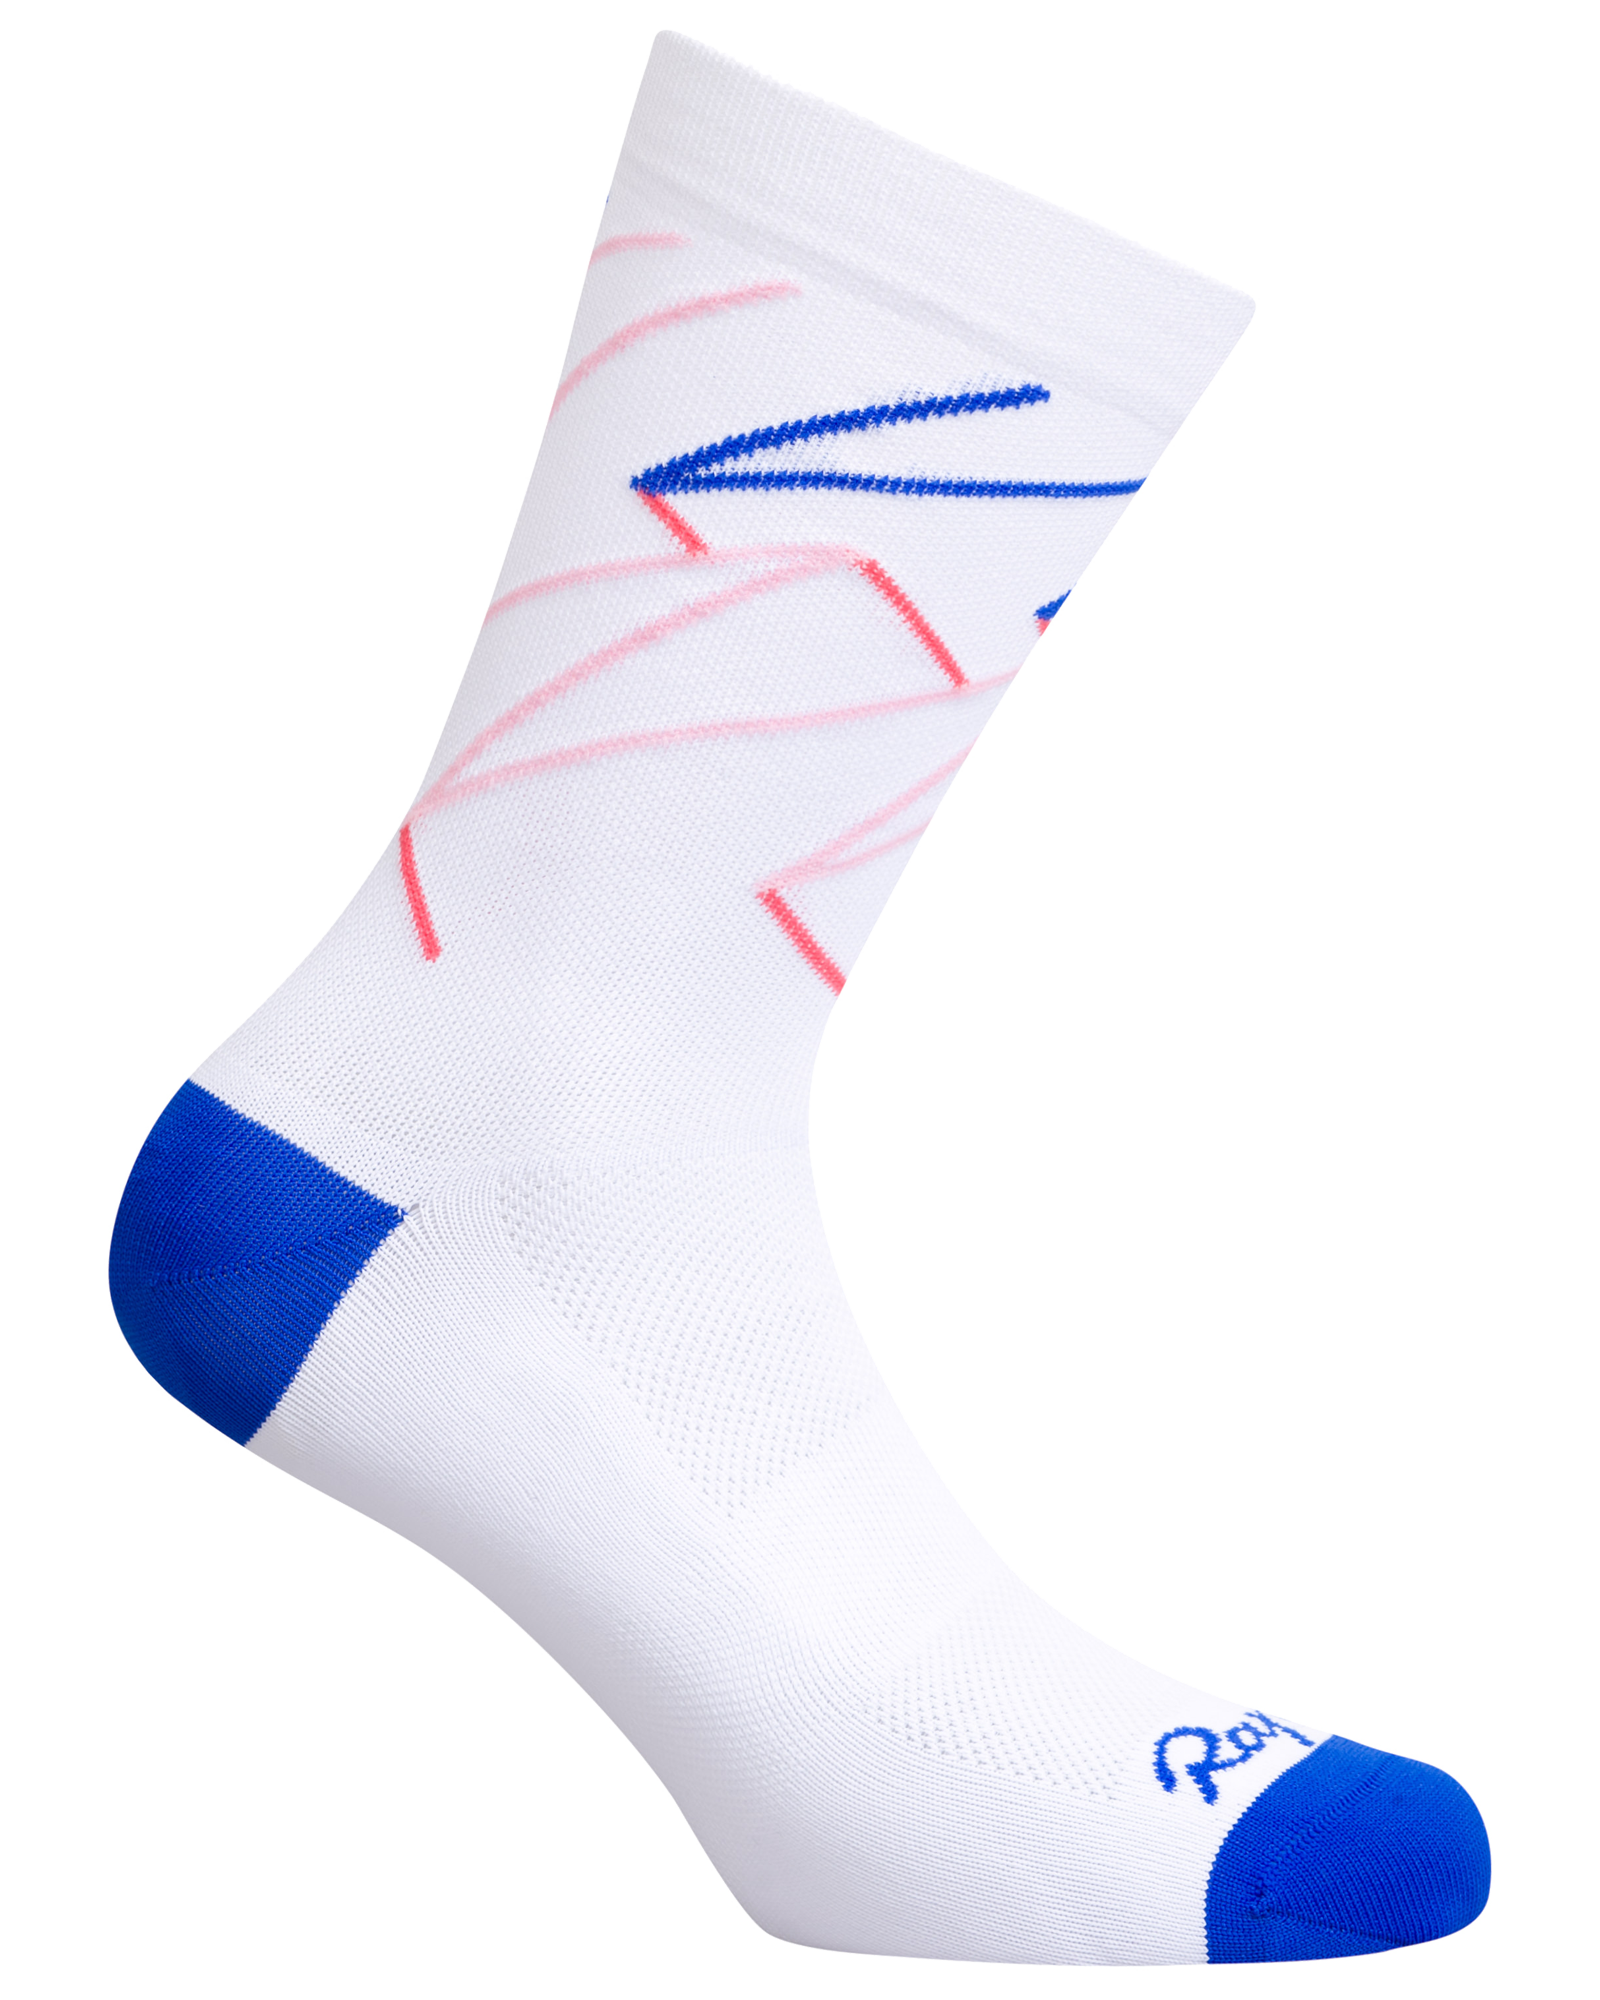 rapha white socks